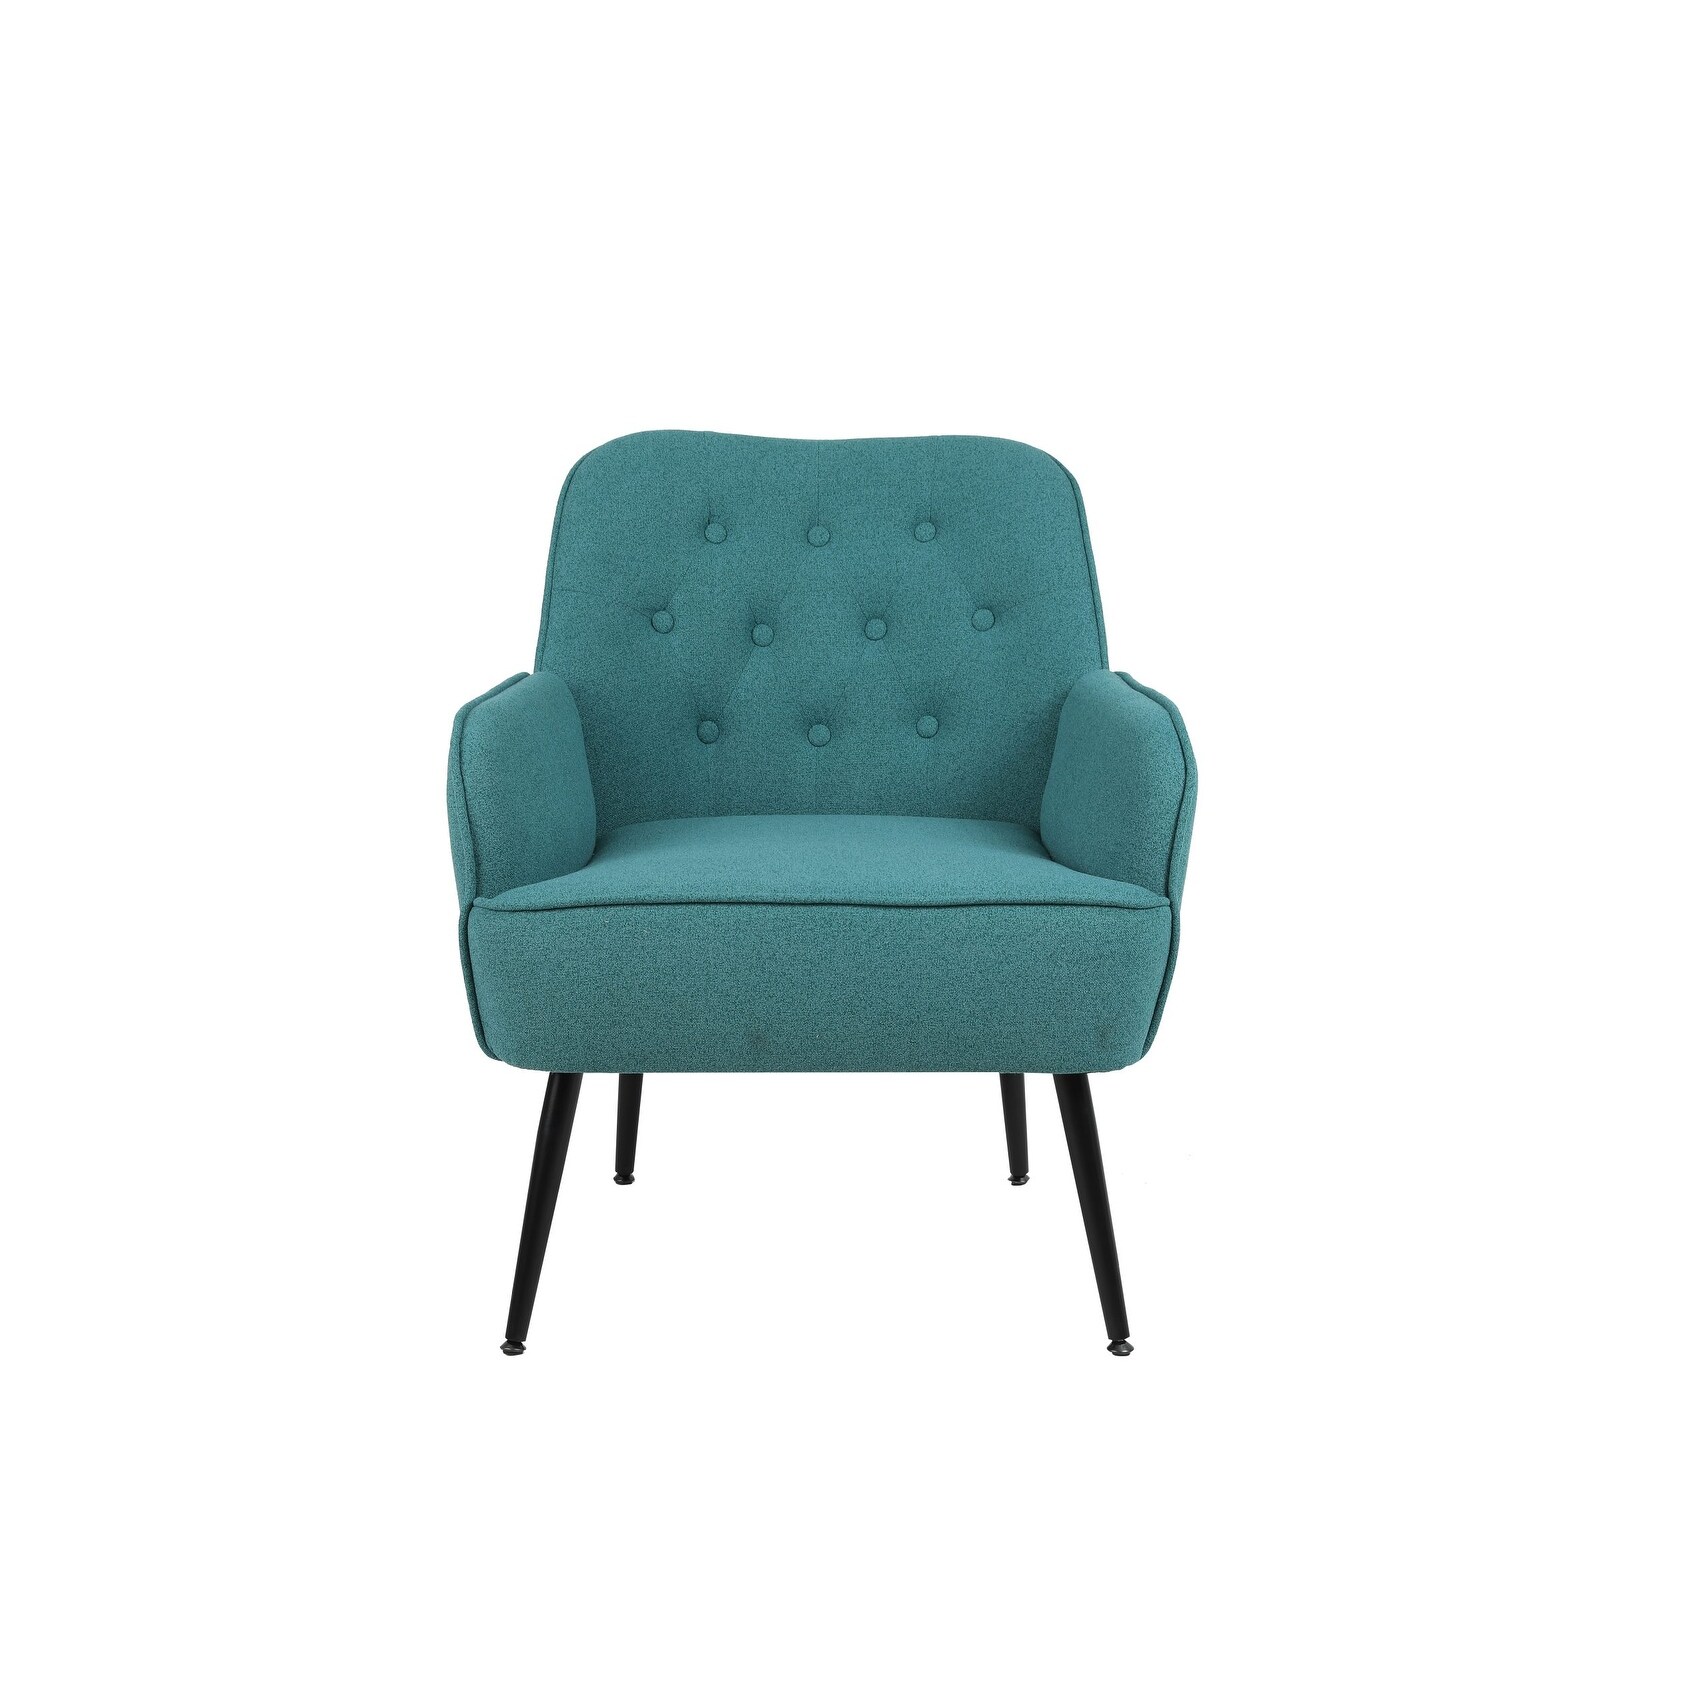 Modern Mid Century Velvet Chair Sherpa Armchair For Living Room Bedroom Office